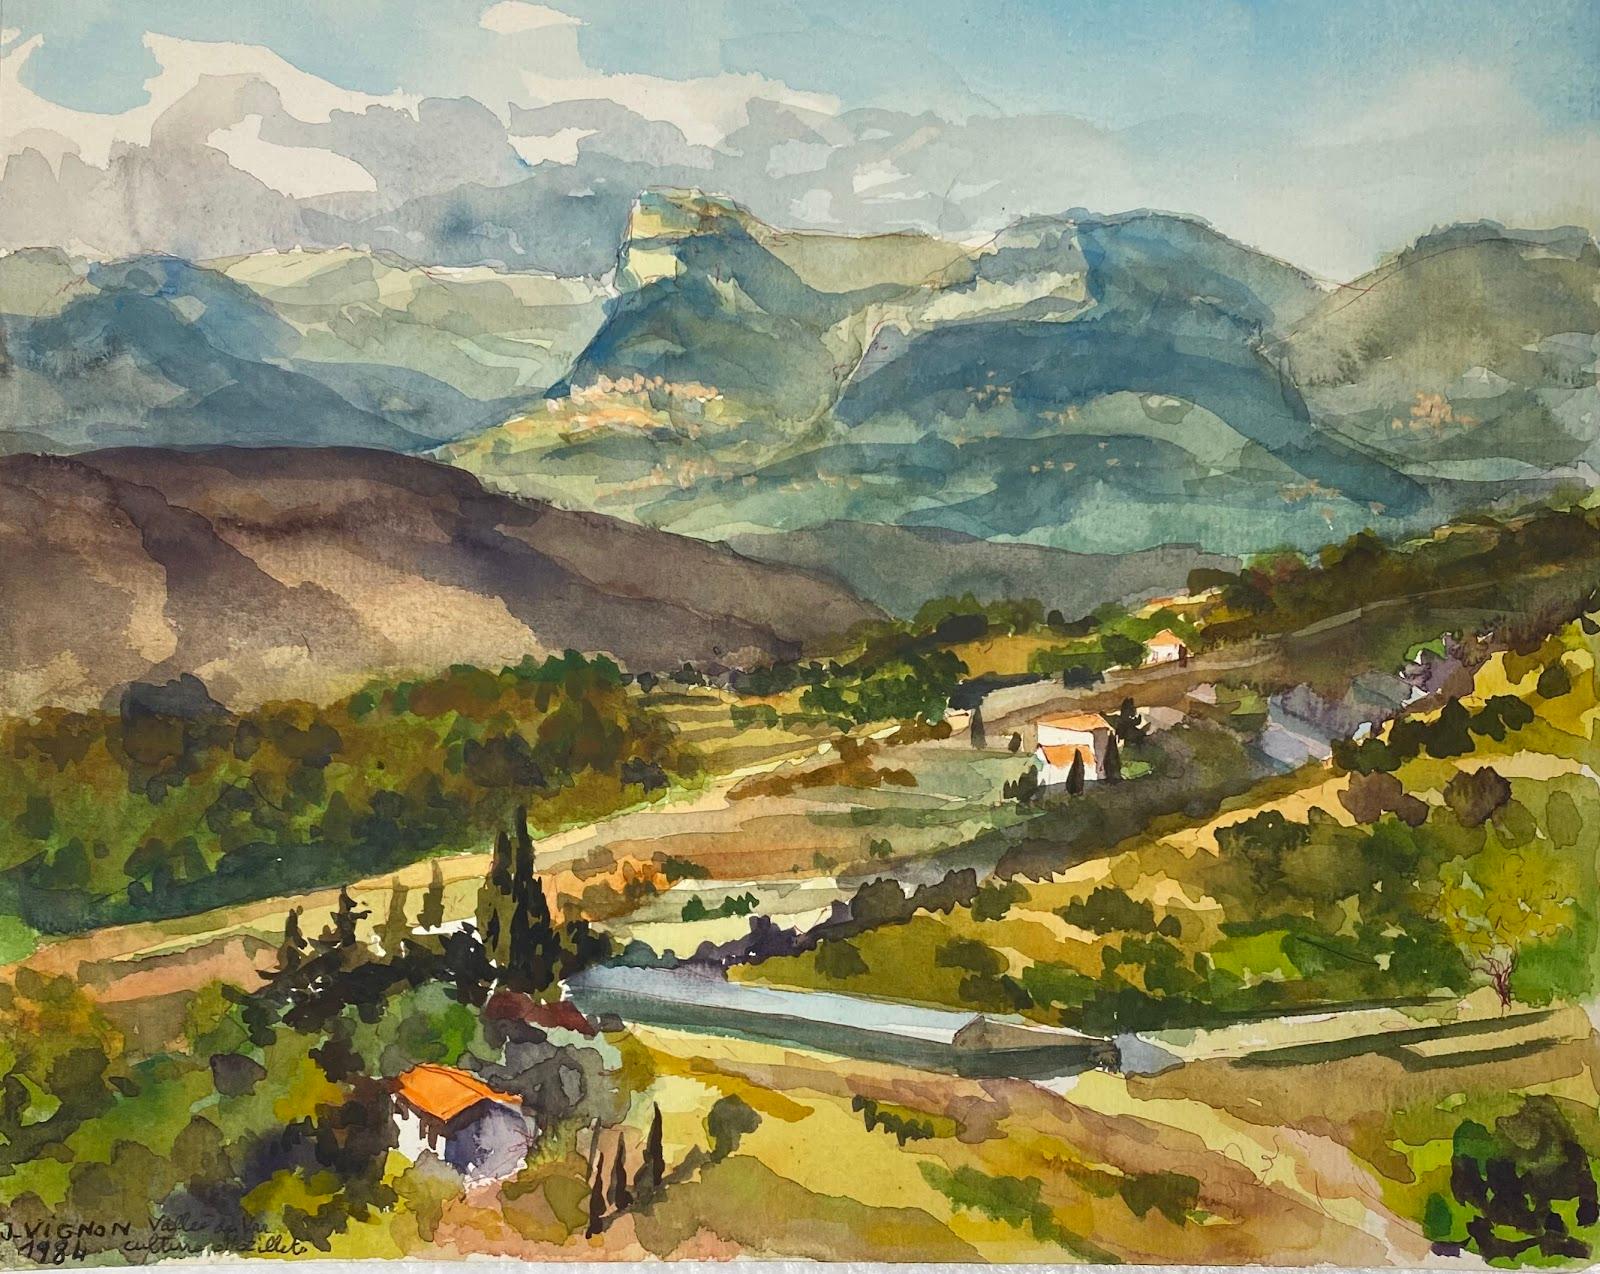 Josine Vignon Landscape Art – Postimpressionistisches französisches Aquarellgemälde, Sommertal-Landschaft 